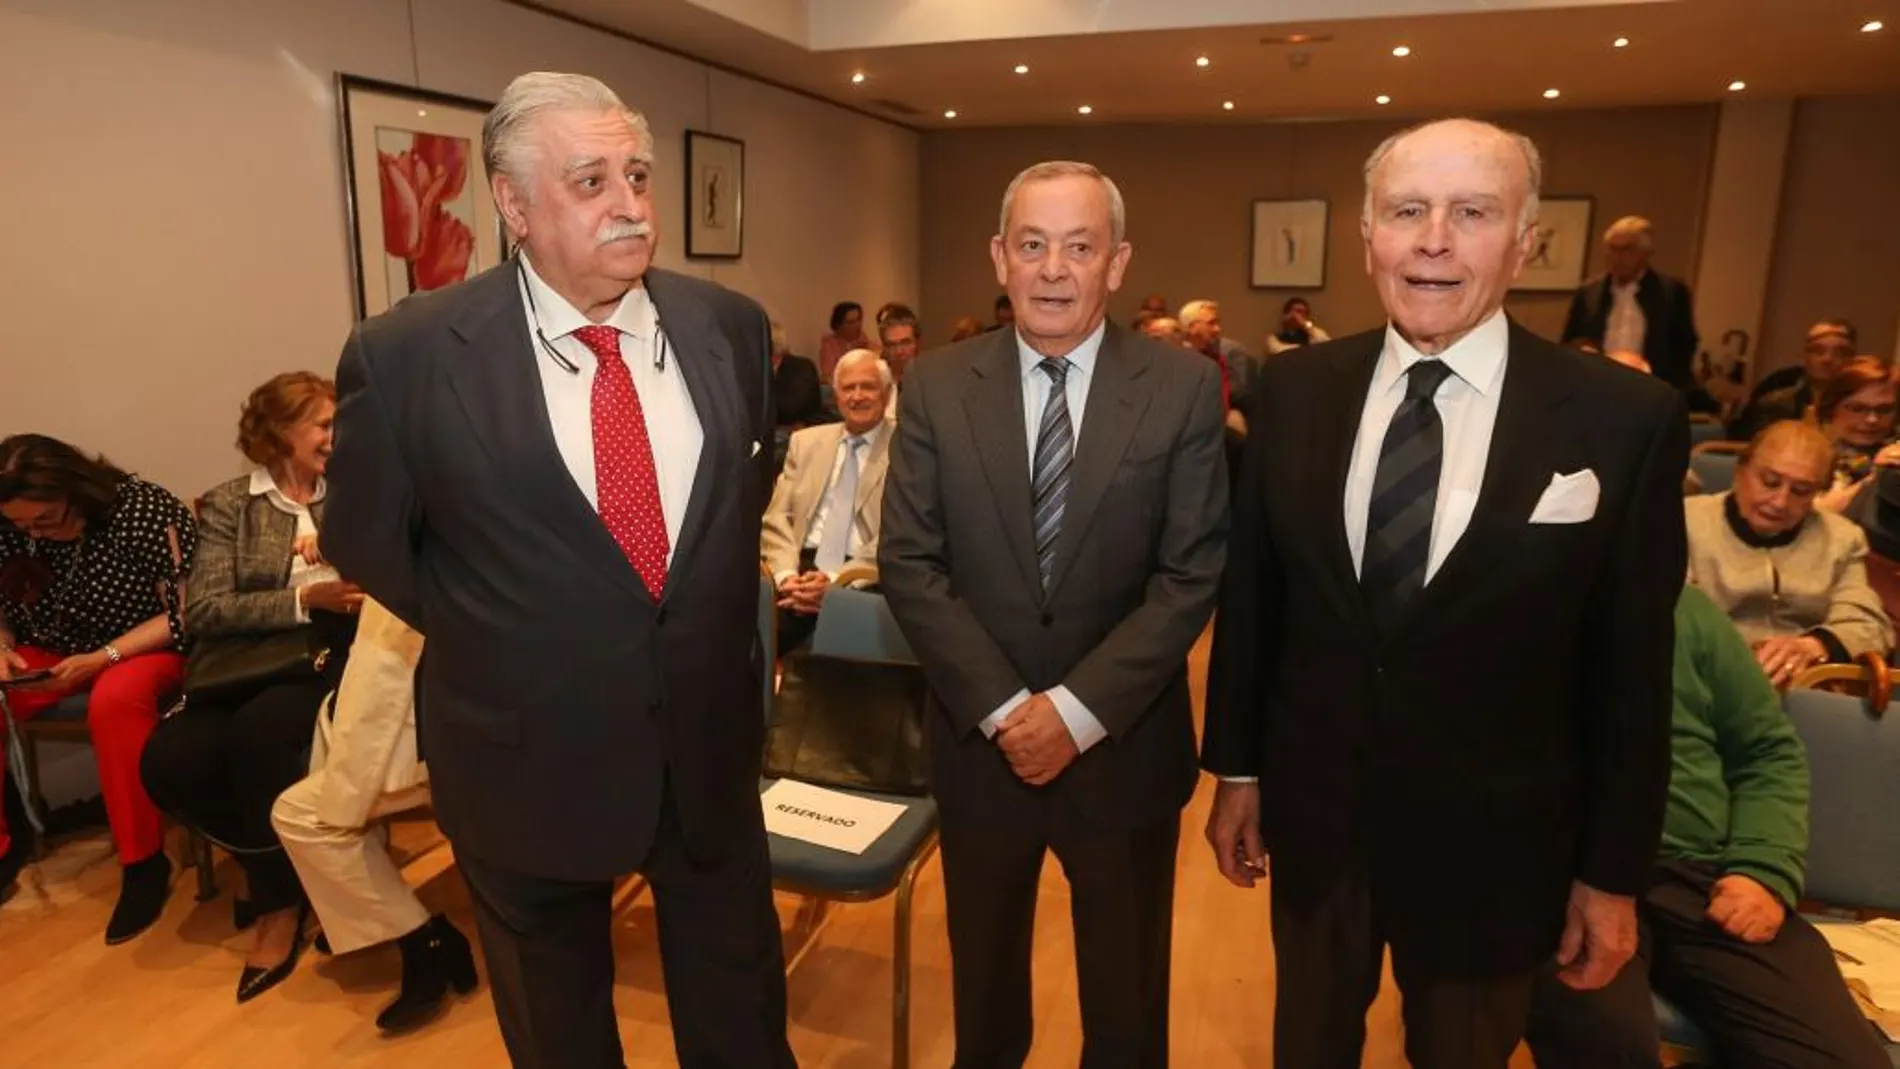 El ex ministro Carlos Solchaga junto a Felipe Martínez-Sagarra y Jesús Mateo